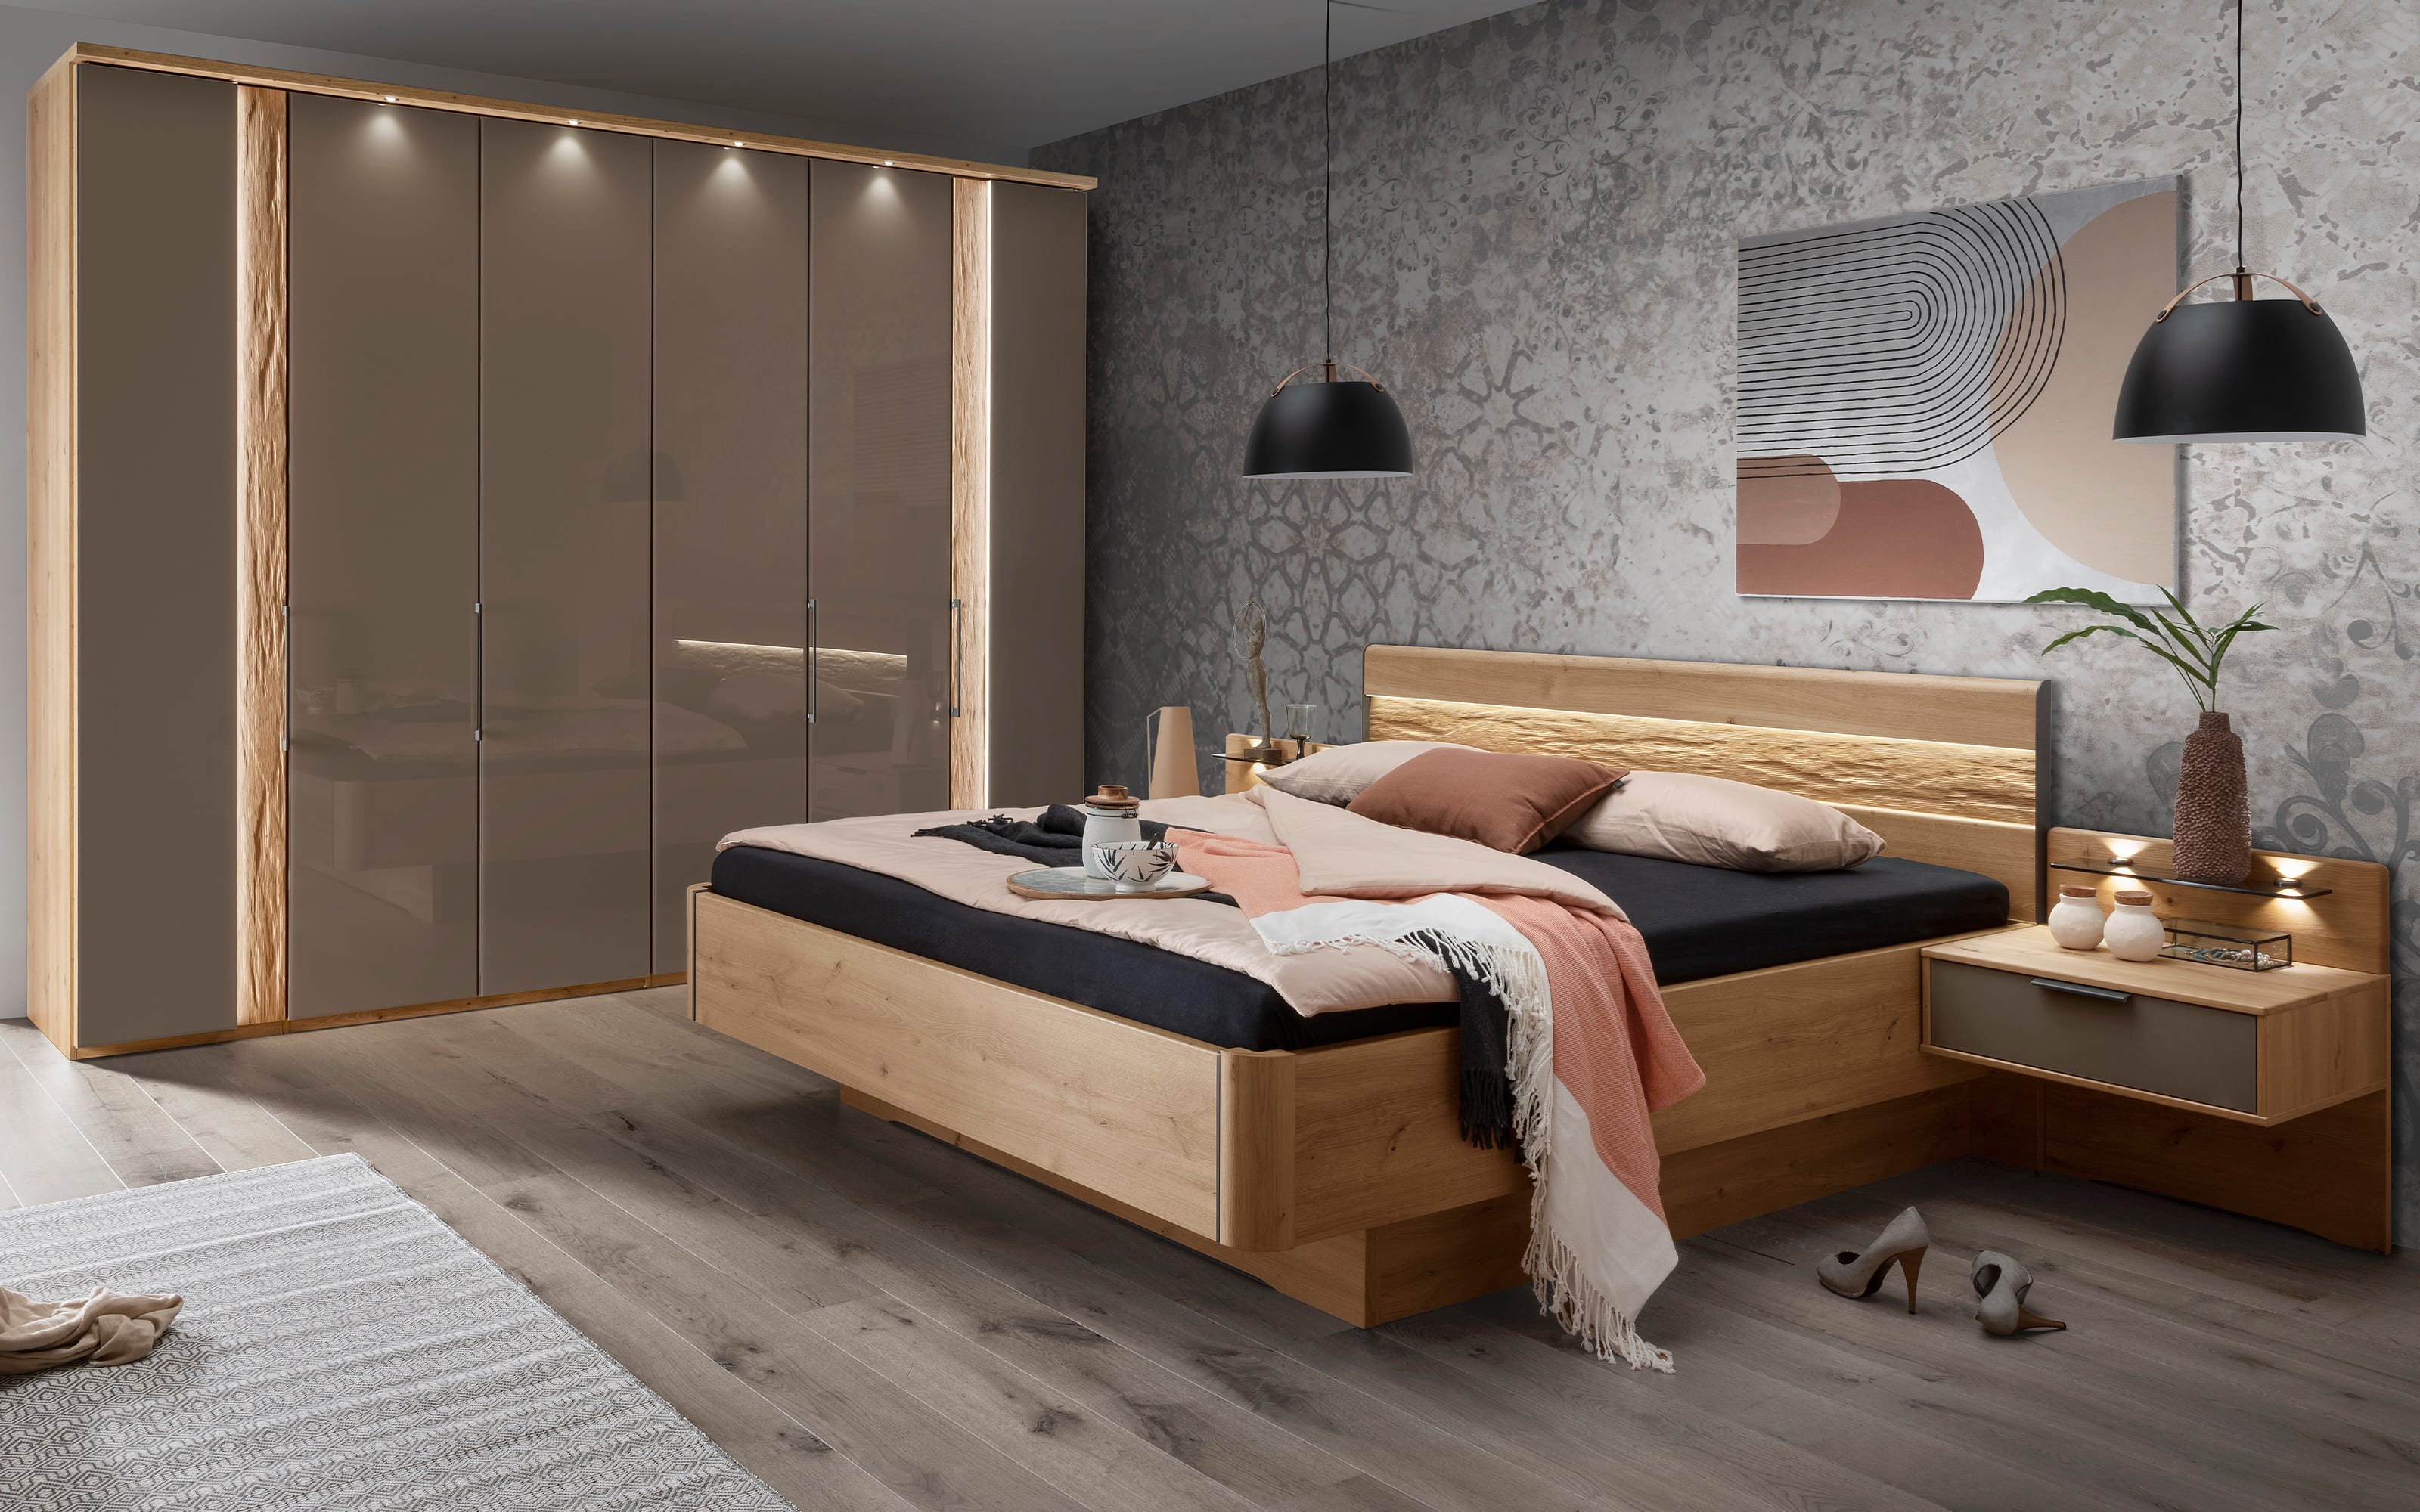 Schlafzimmer Vancouver, Eiche bianco cm, 200 300 Schrank teilmassiv, 180 x cm Hardeck bei online kaufen 216 x